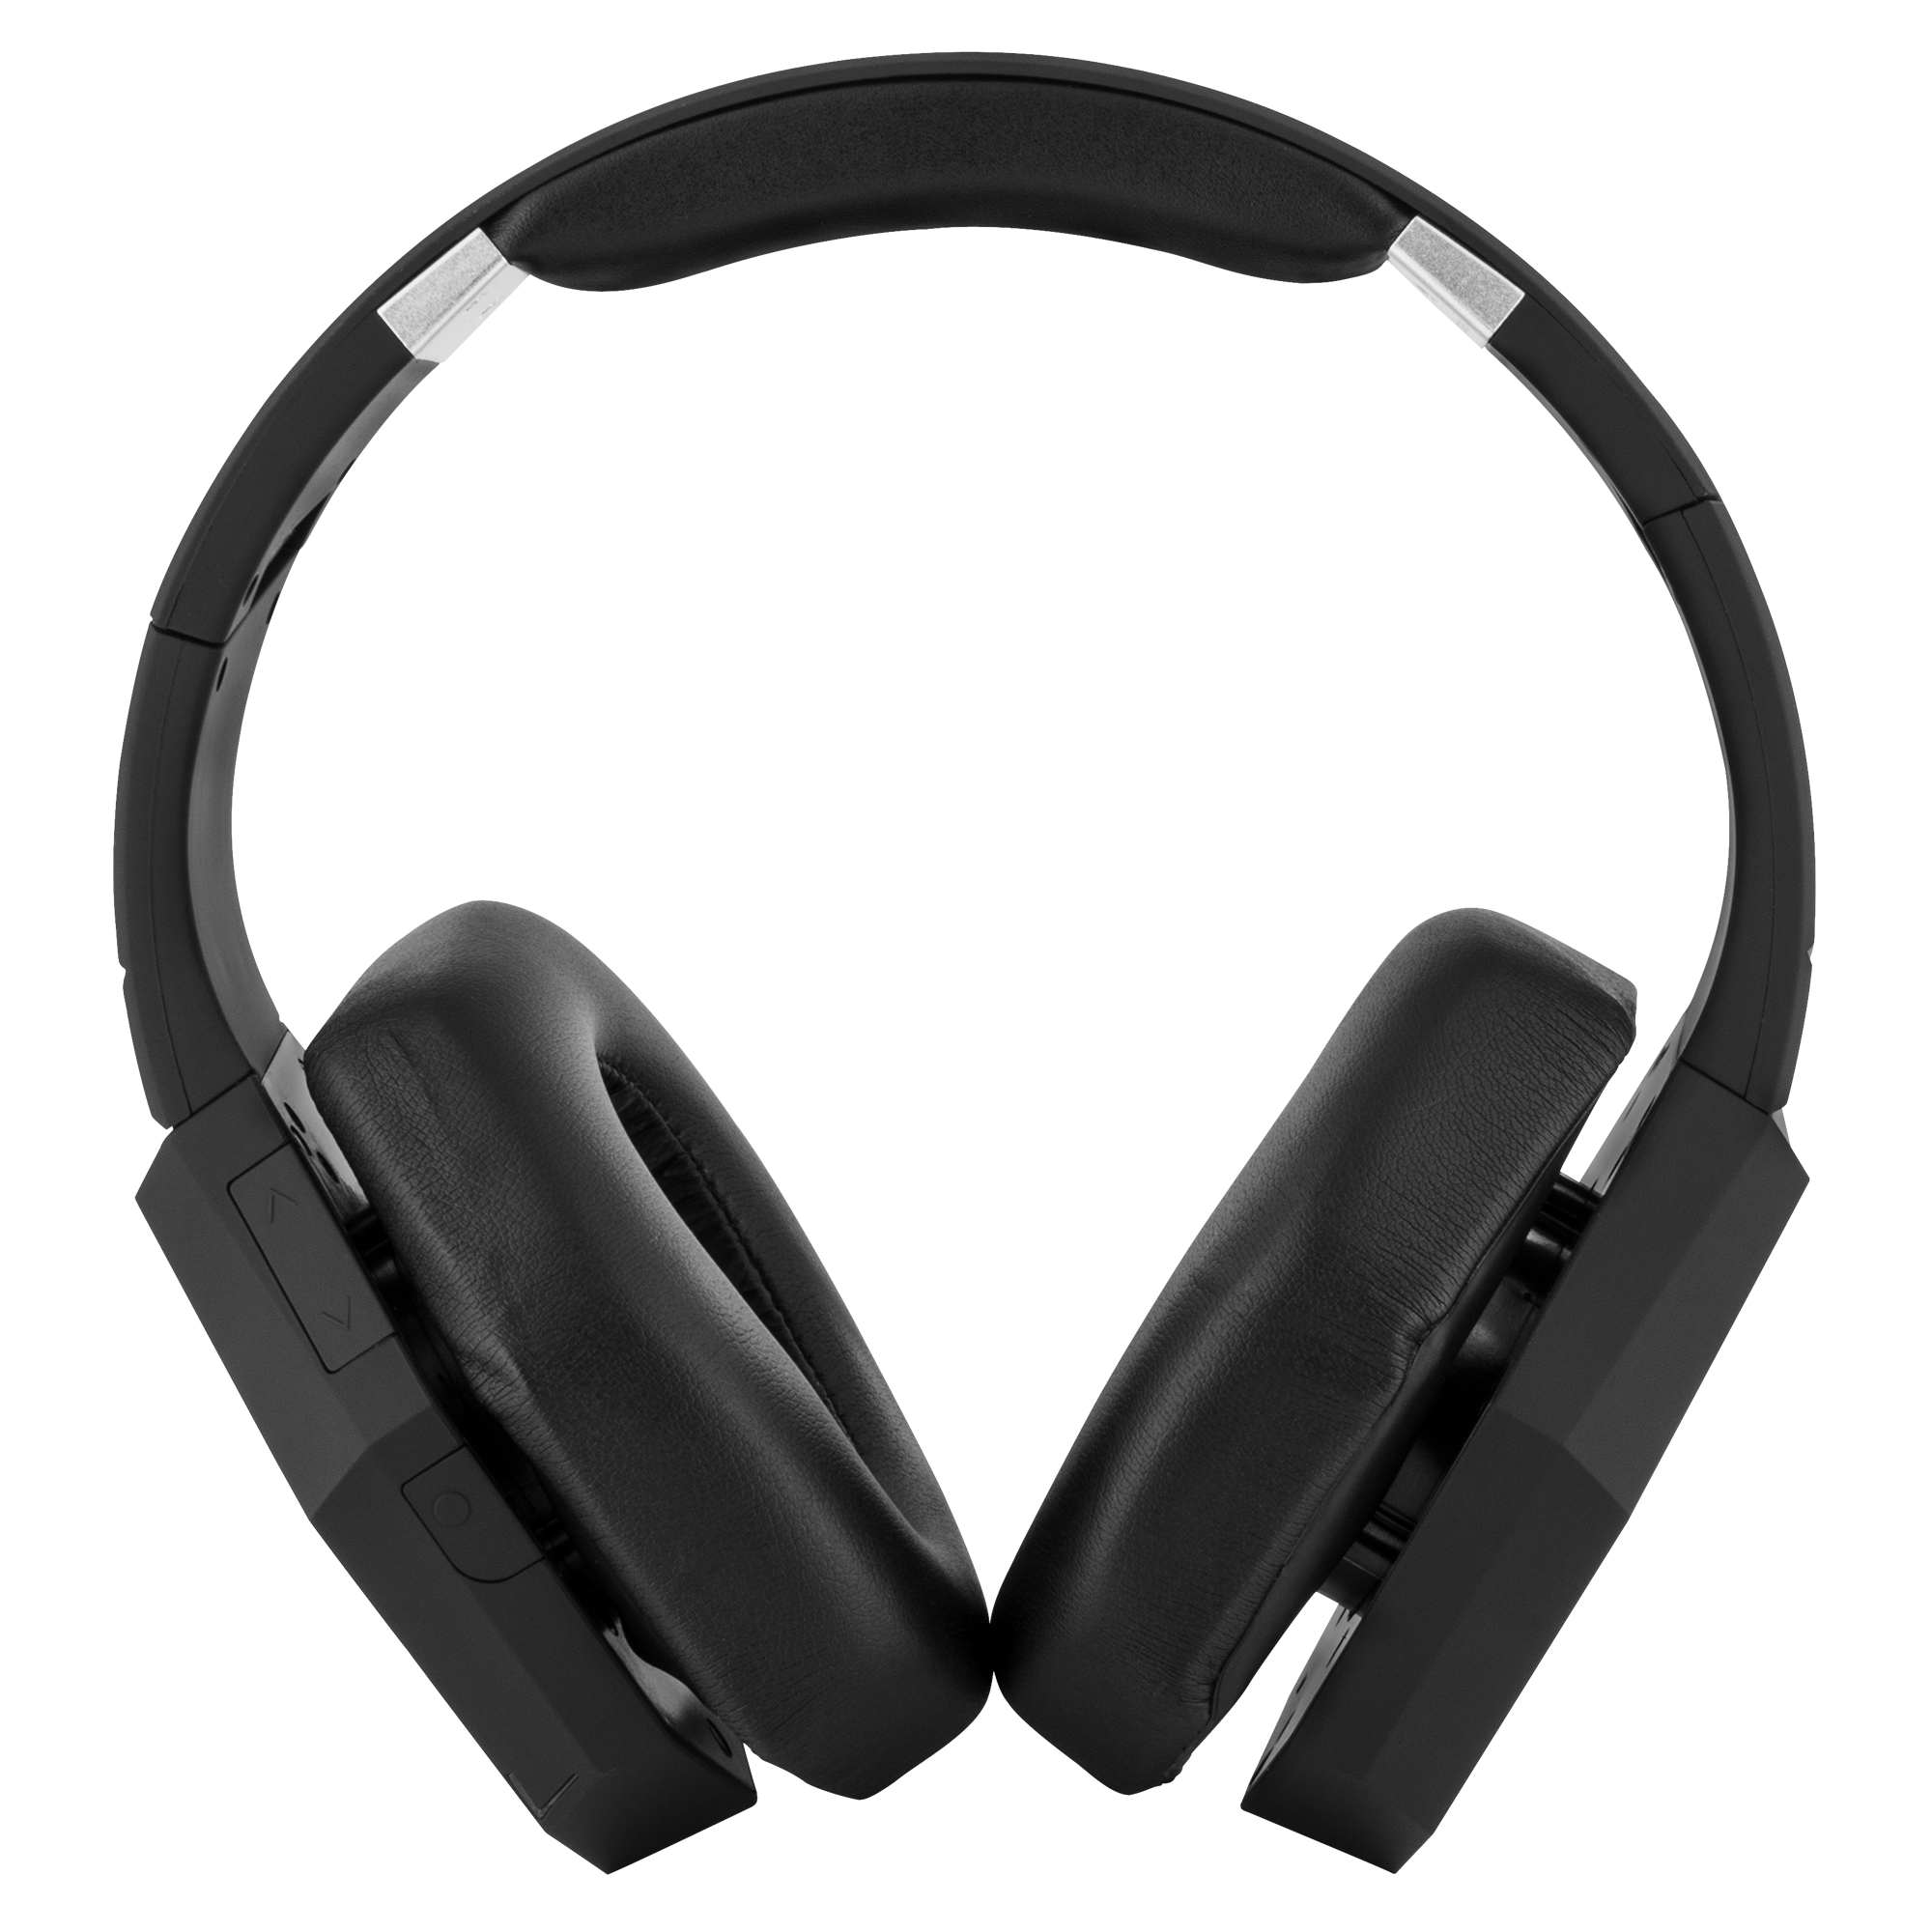 Headphones - Wrapsody / Futures Trader